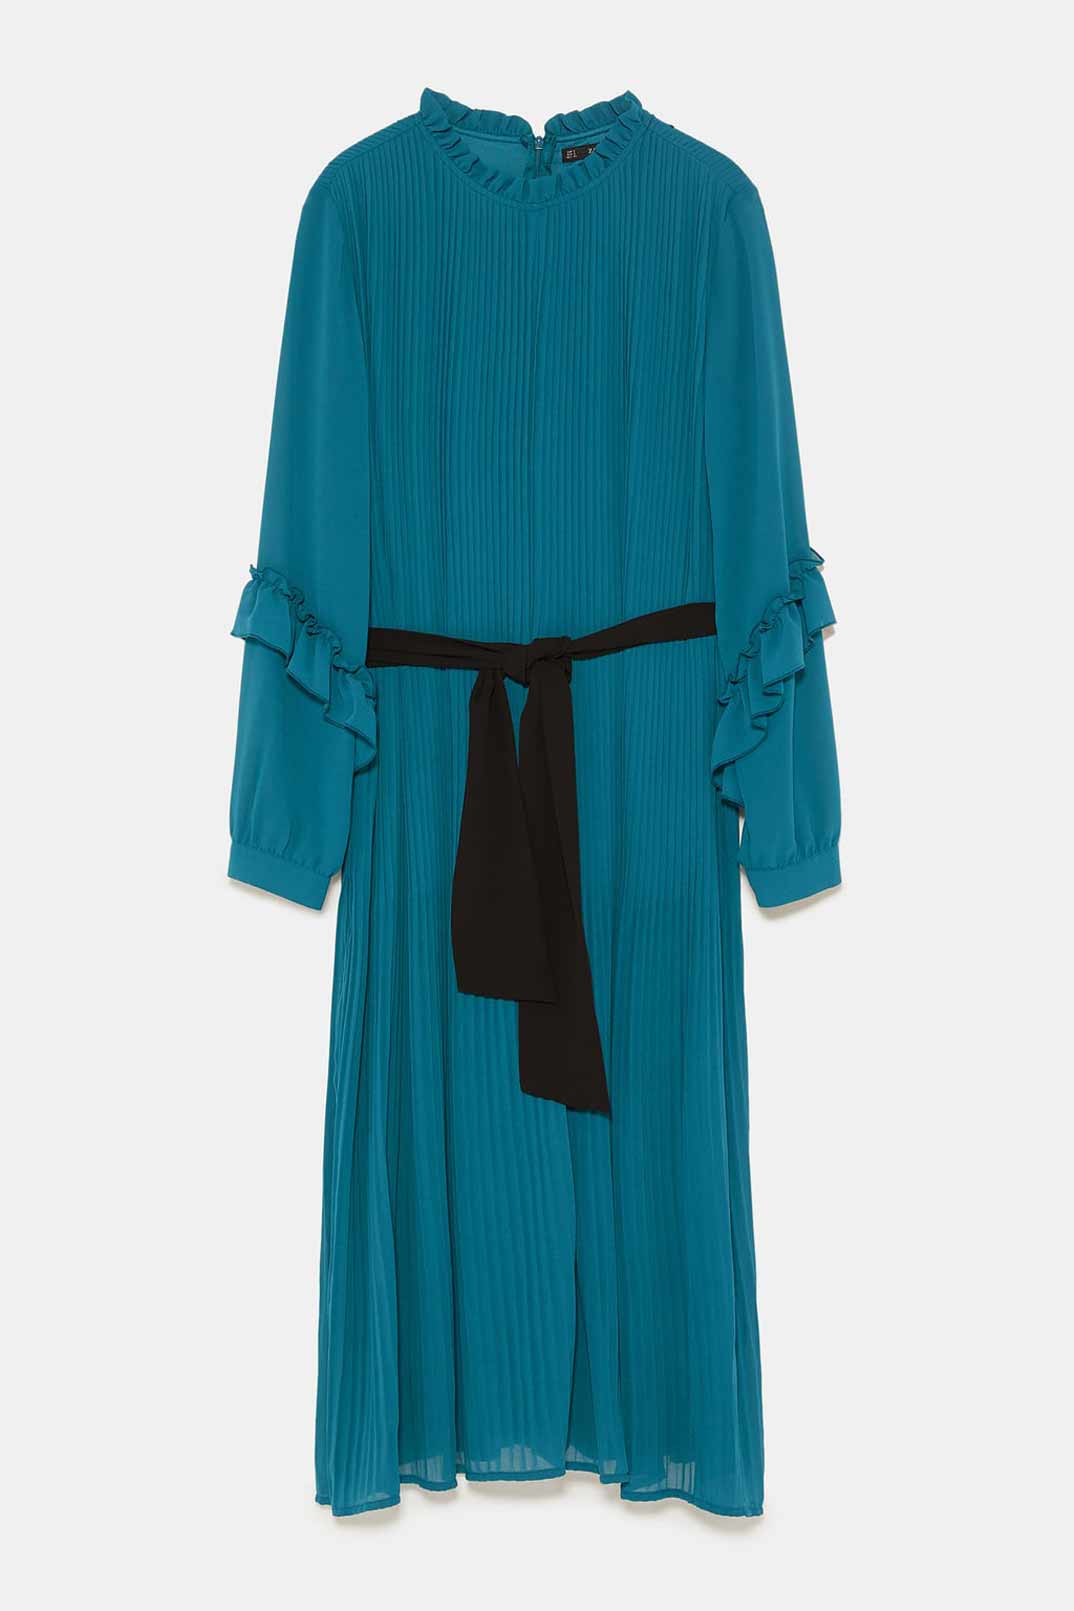 Vestido-Mono Zara (12,99€)